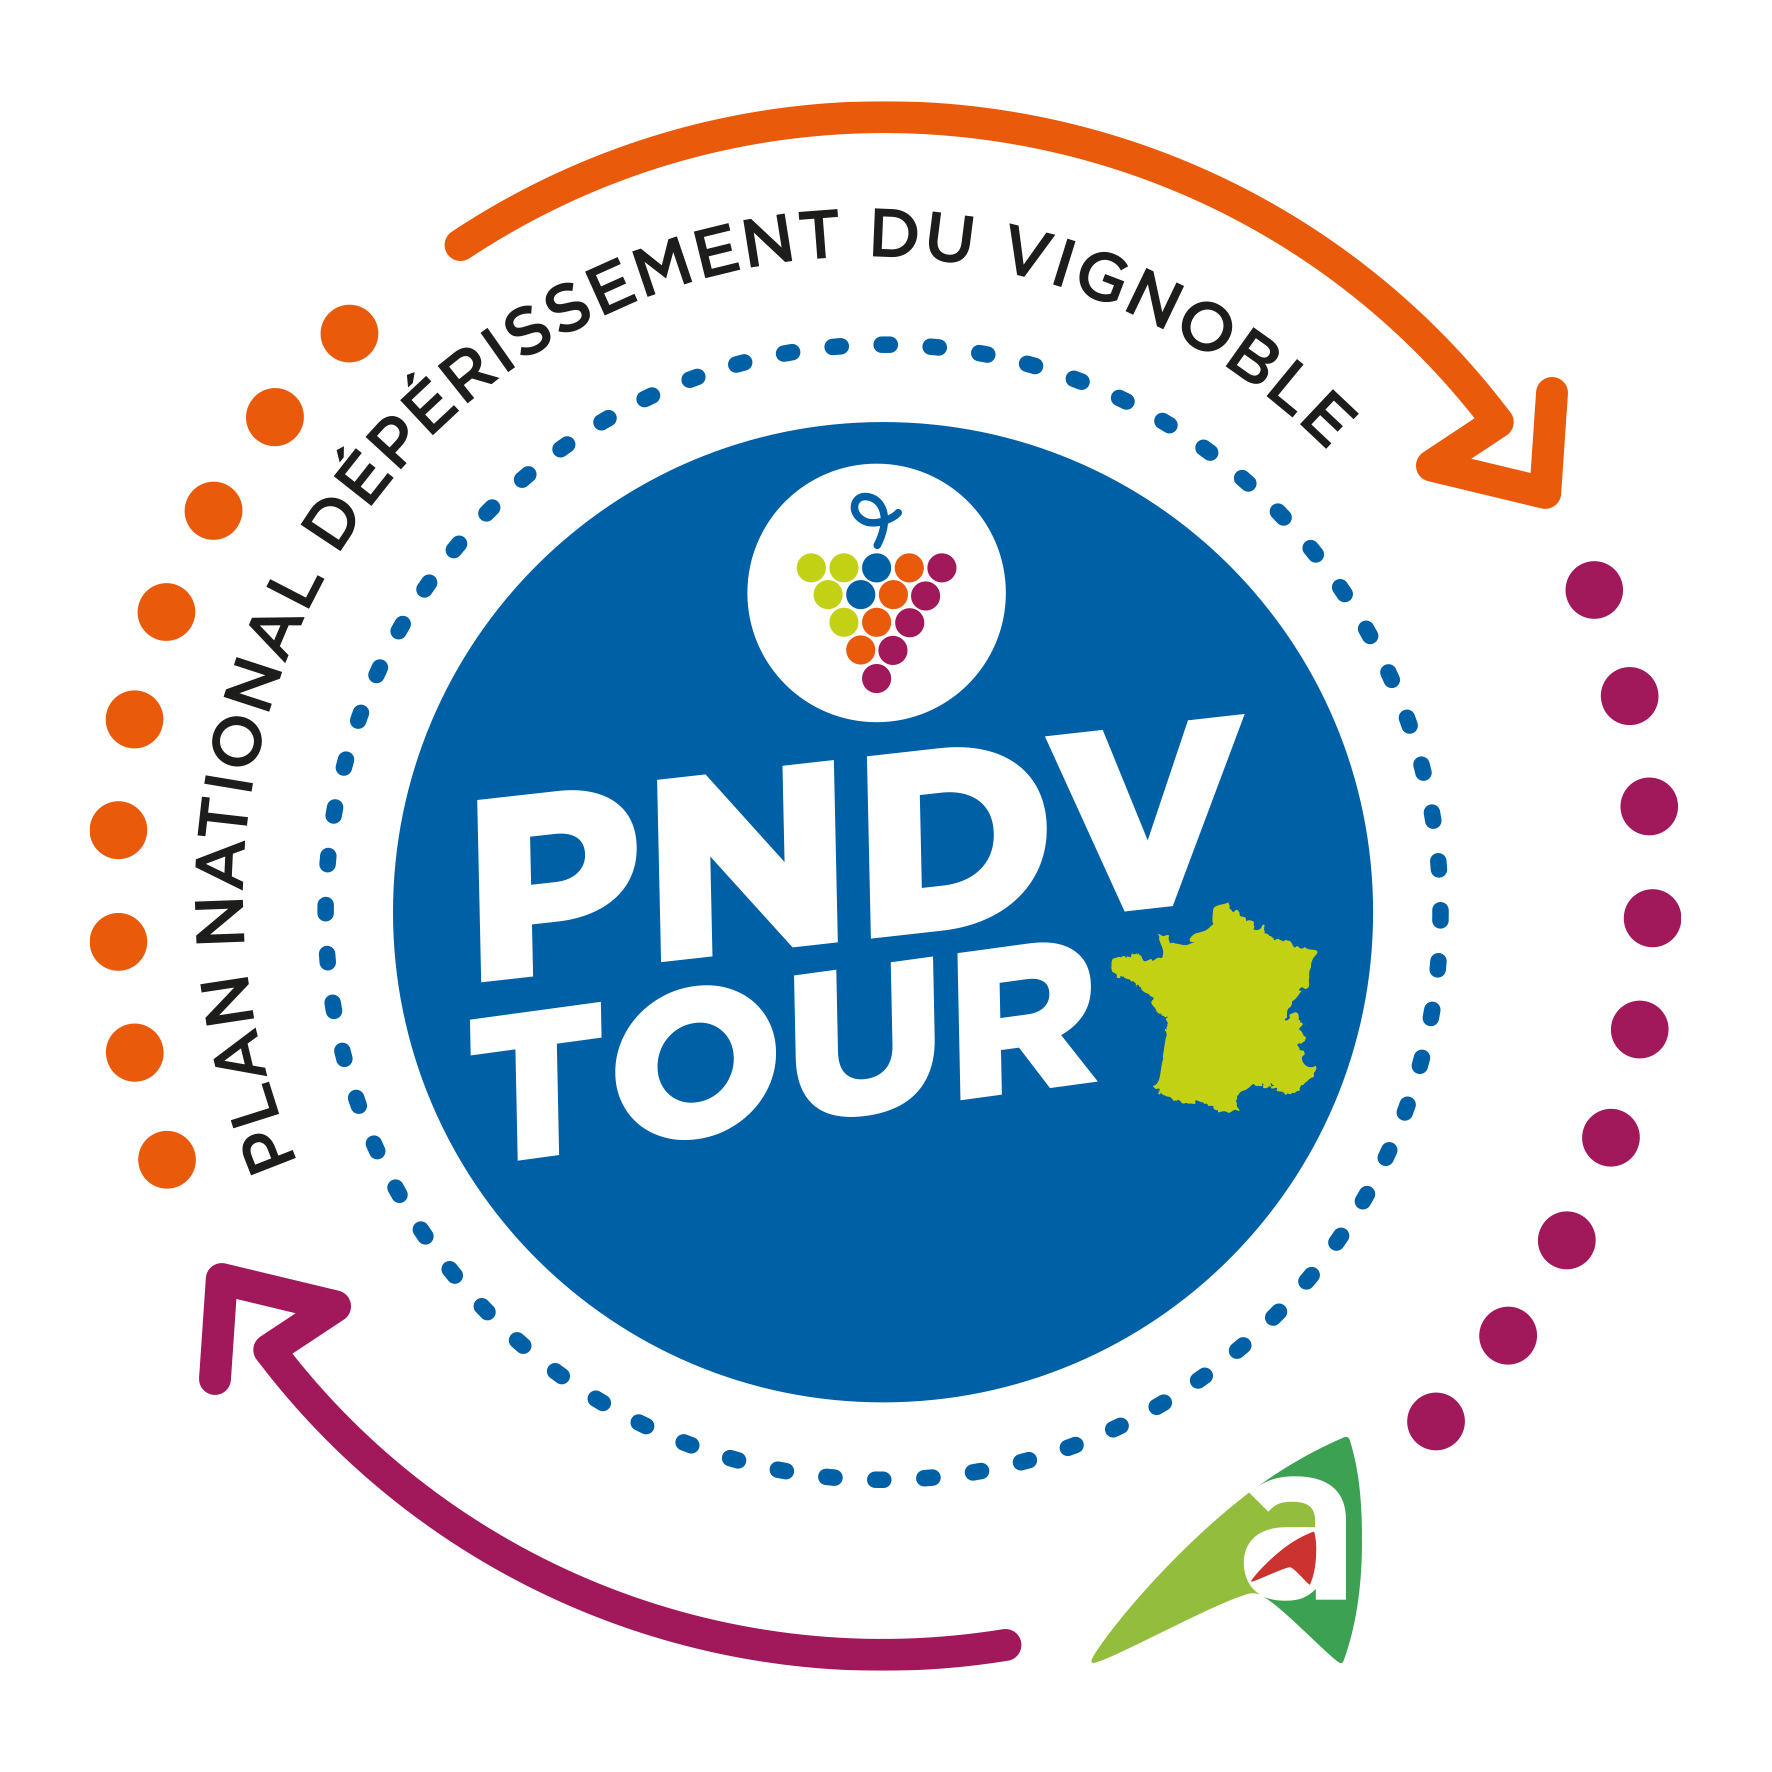 PNDV Tour en Loire-Atlantique ! 